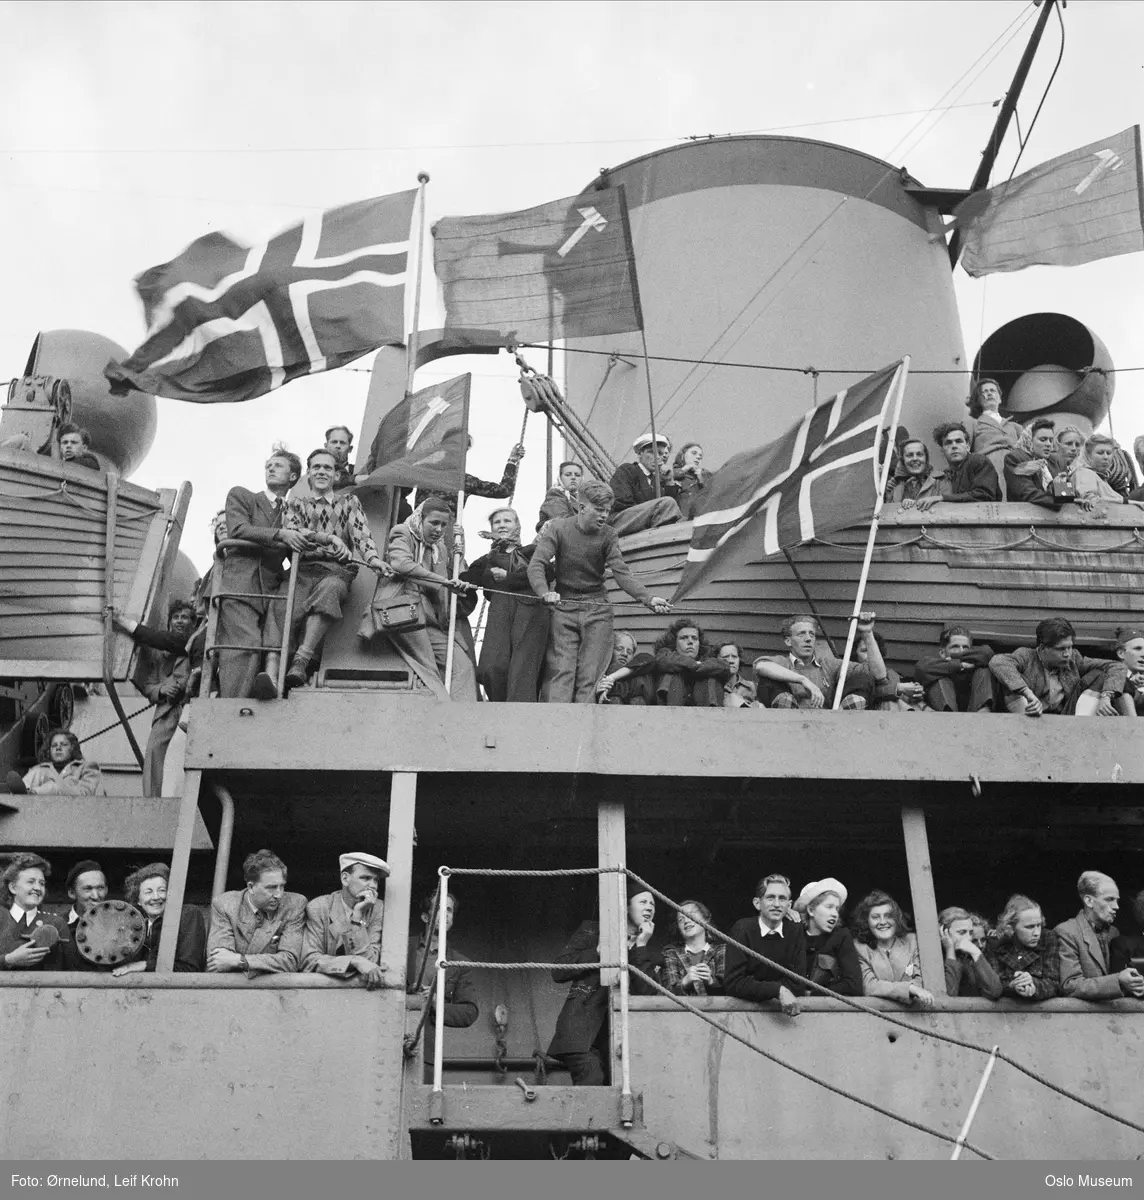 Arbeidernes Ungdomsfylking (AUF), avreise til leir i Danmark med m/s Svalbard, norske flagg, kommunistflagg